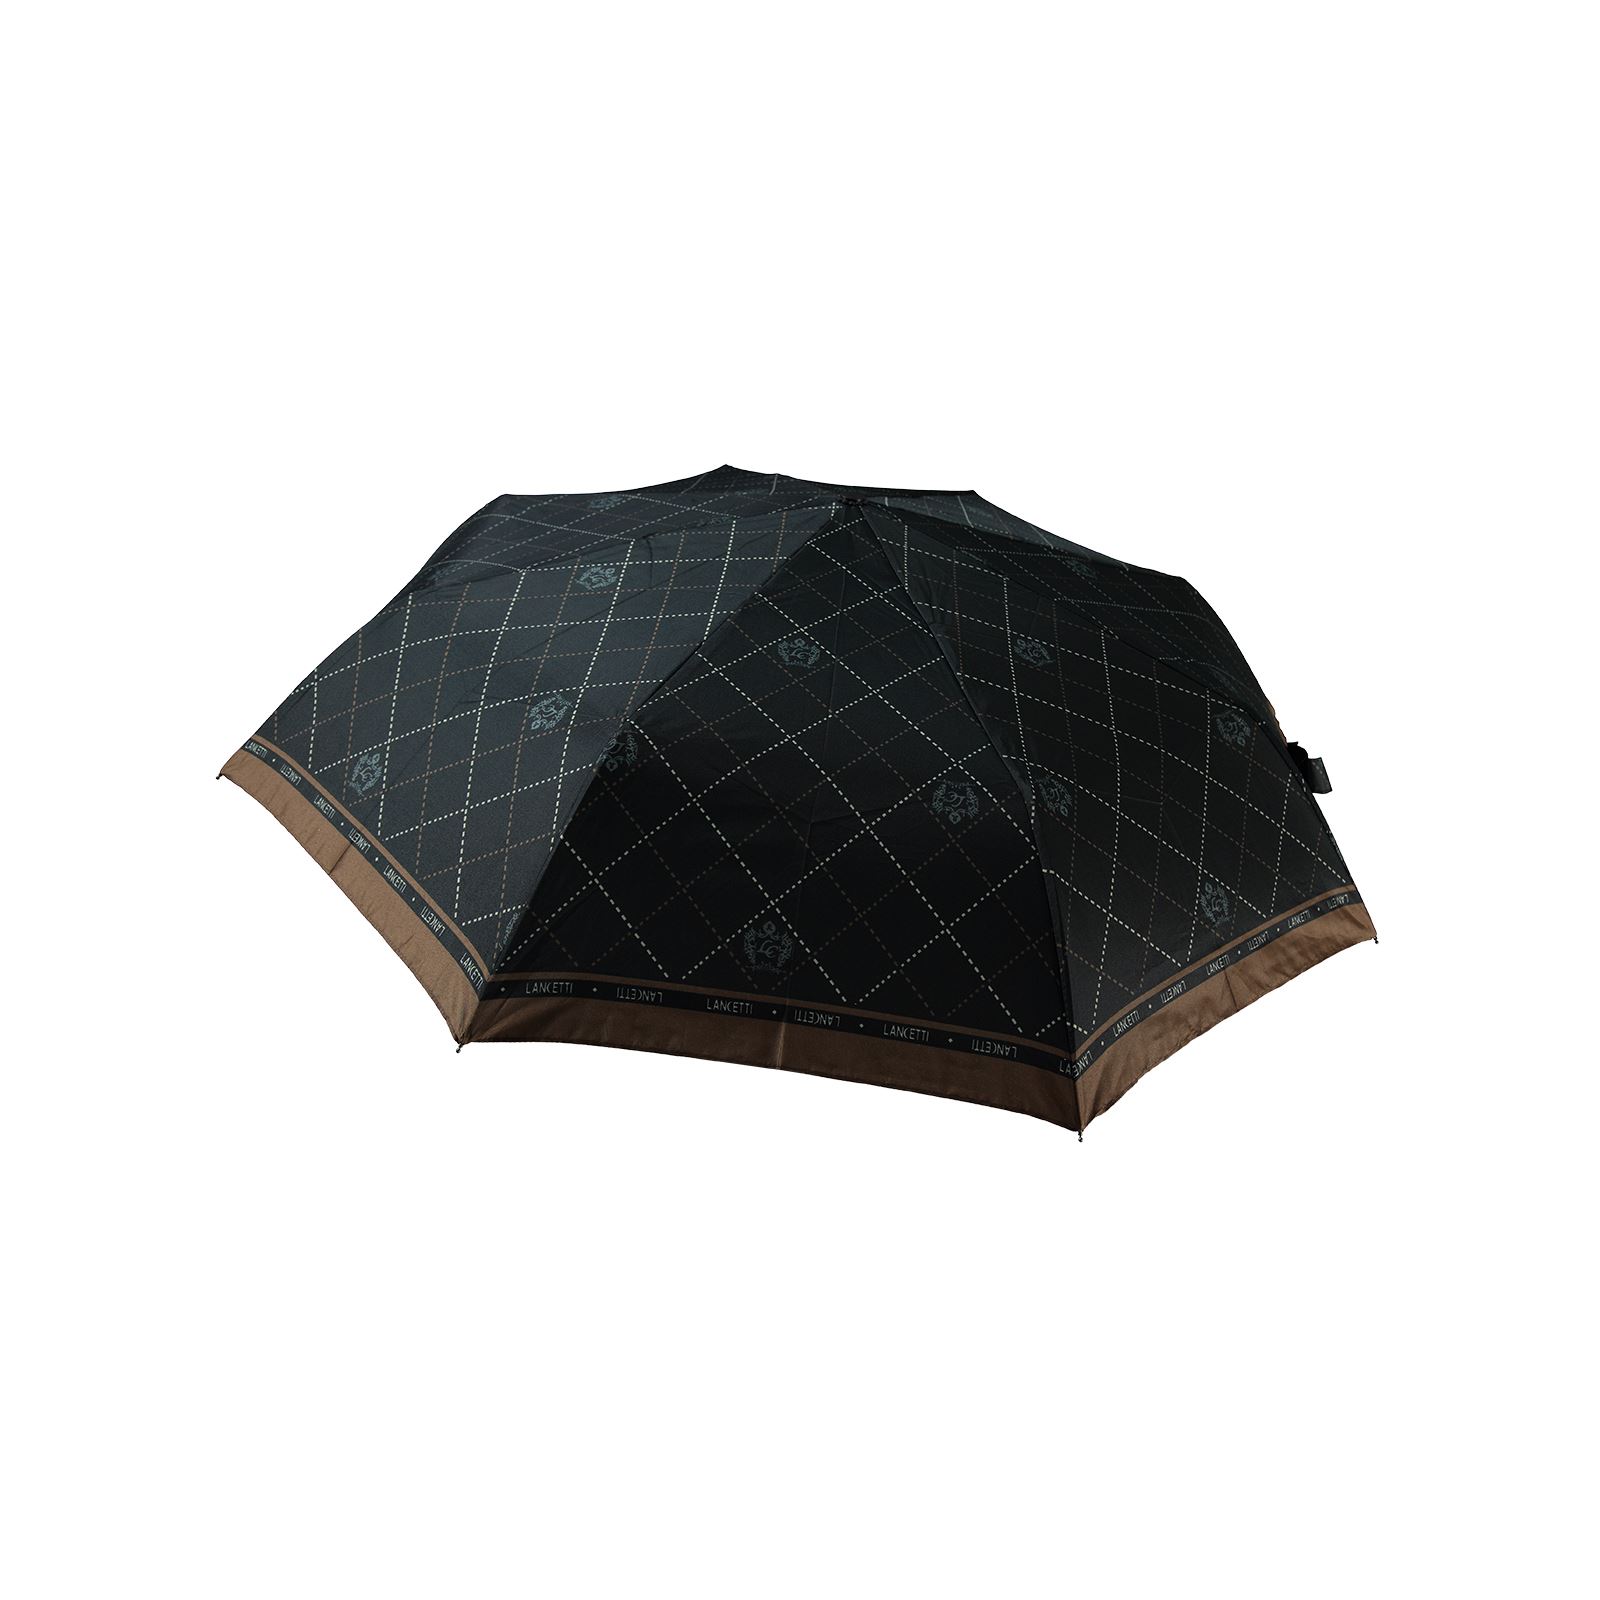 Rainwalker Otomatik Kadın Şemsiyesi Siyah